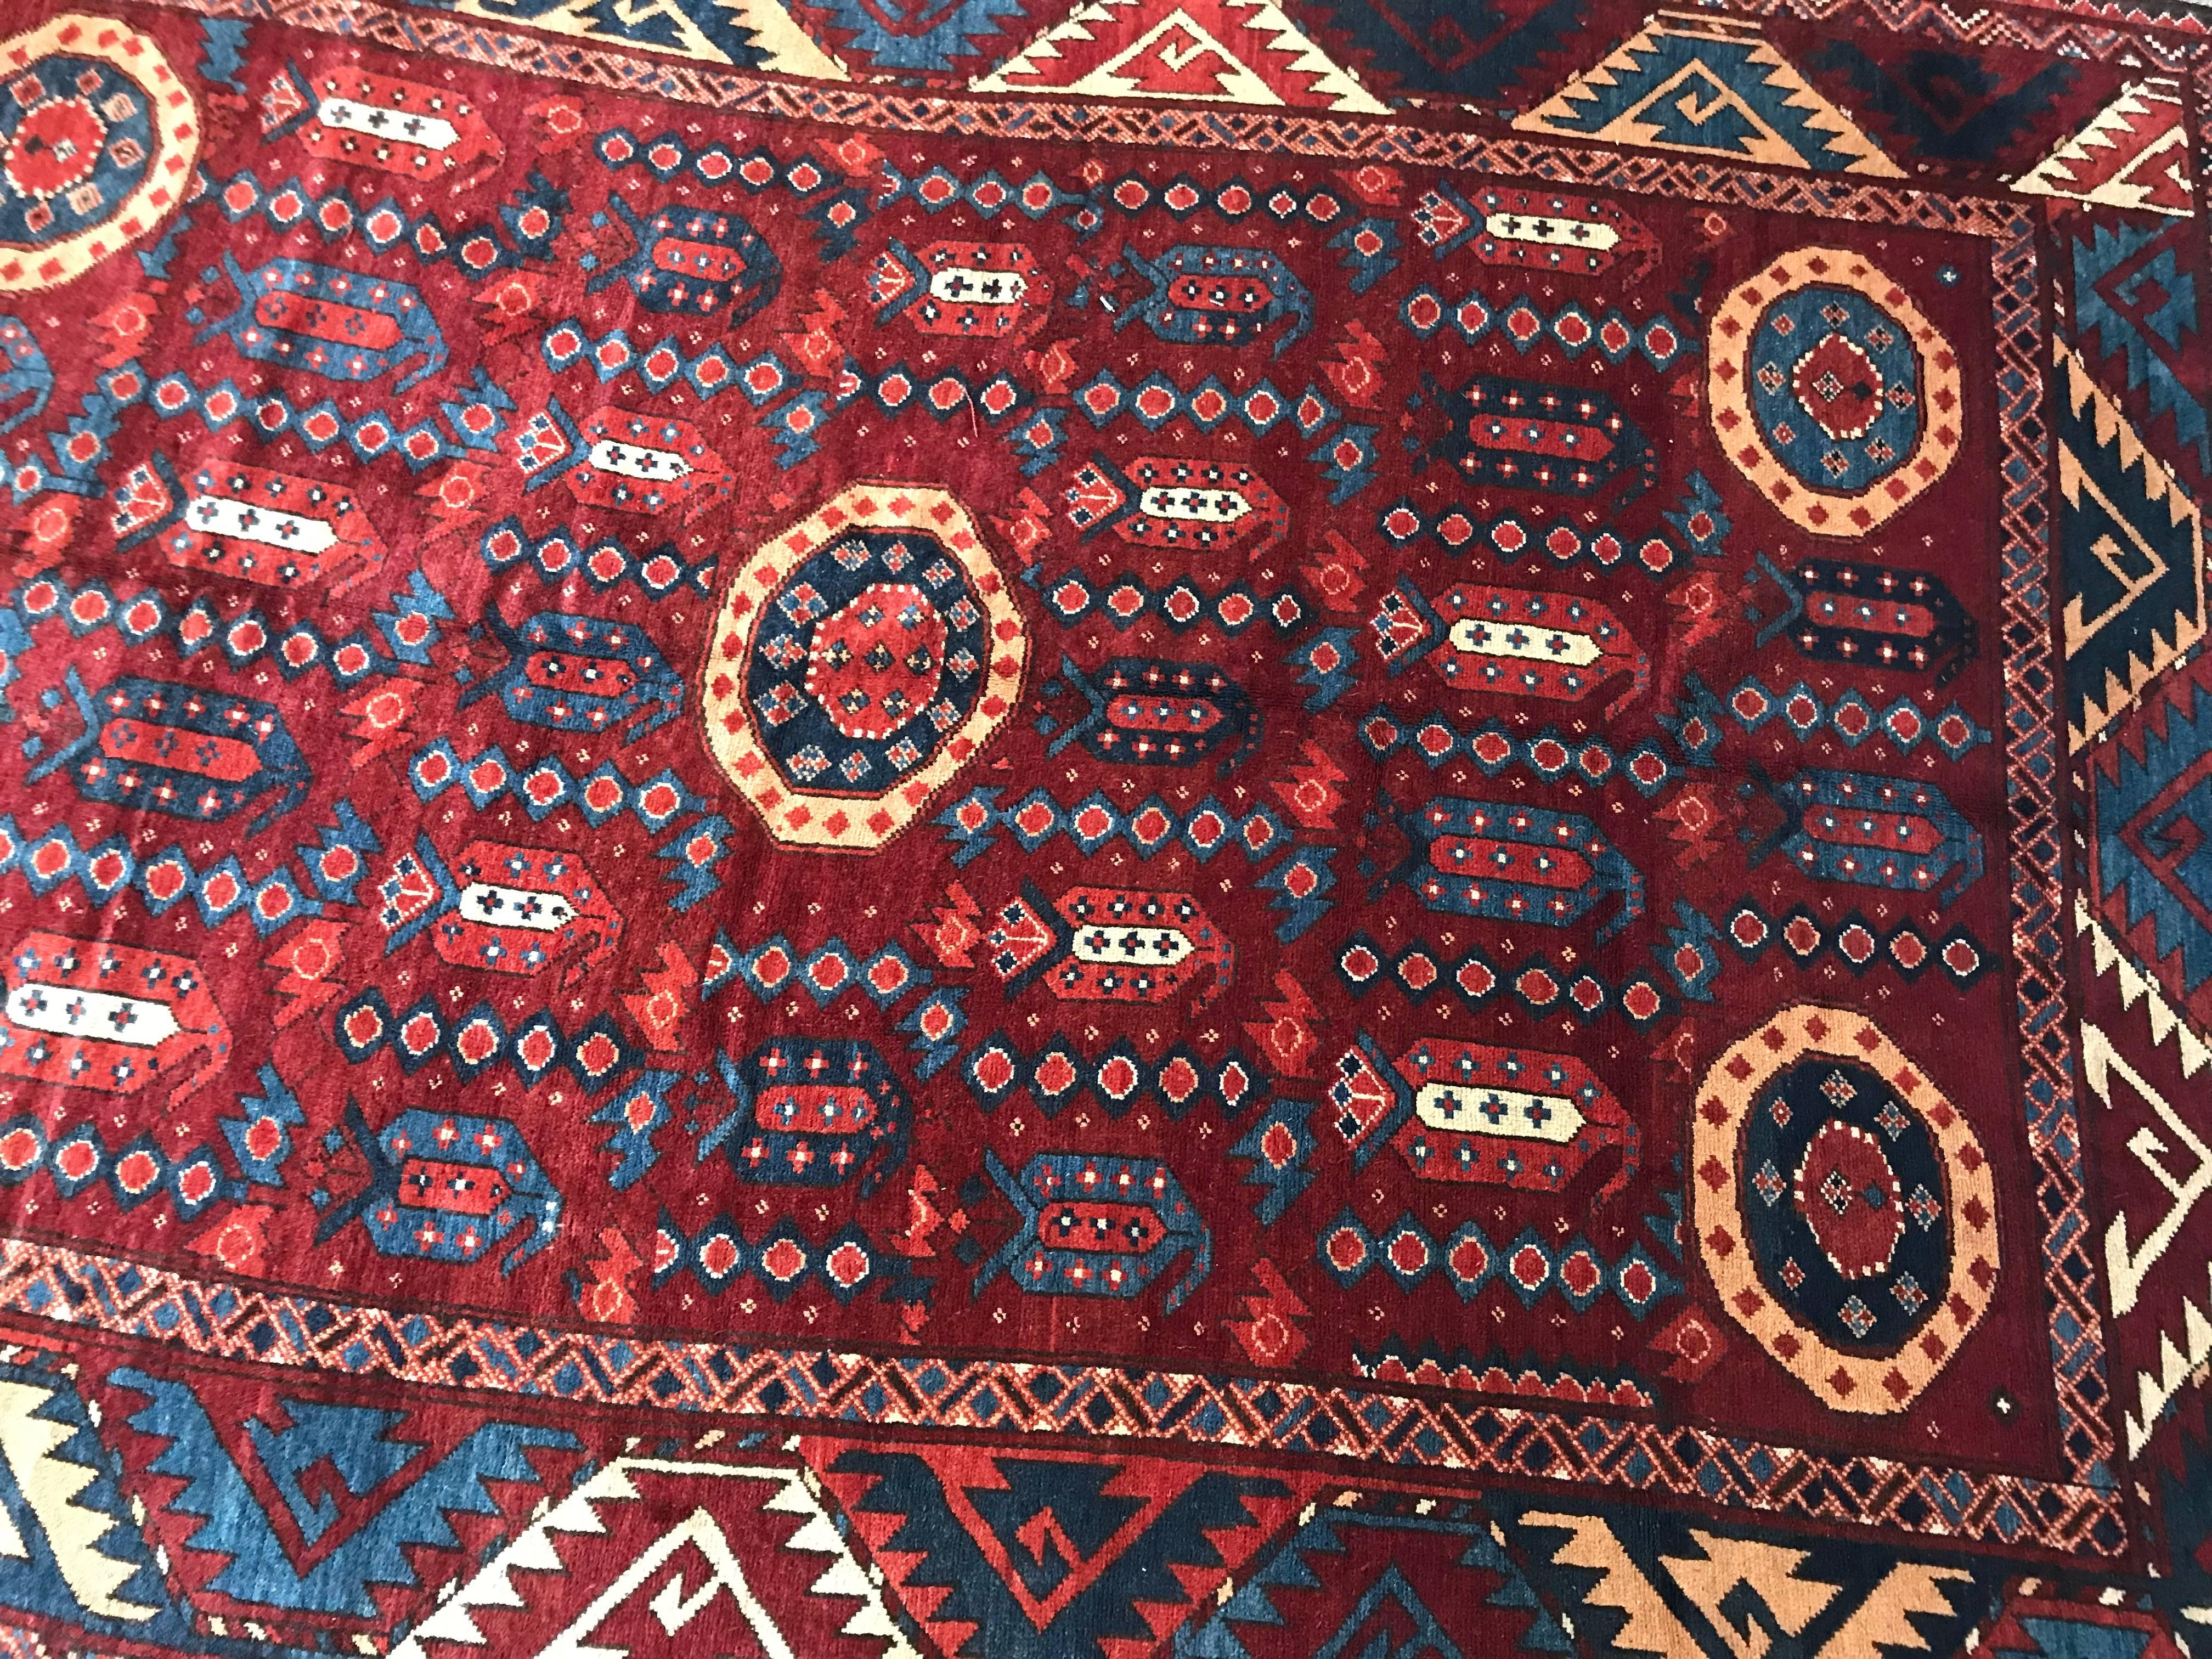 Contemporary Beshir Carpet or Rug 3